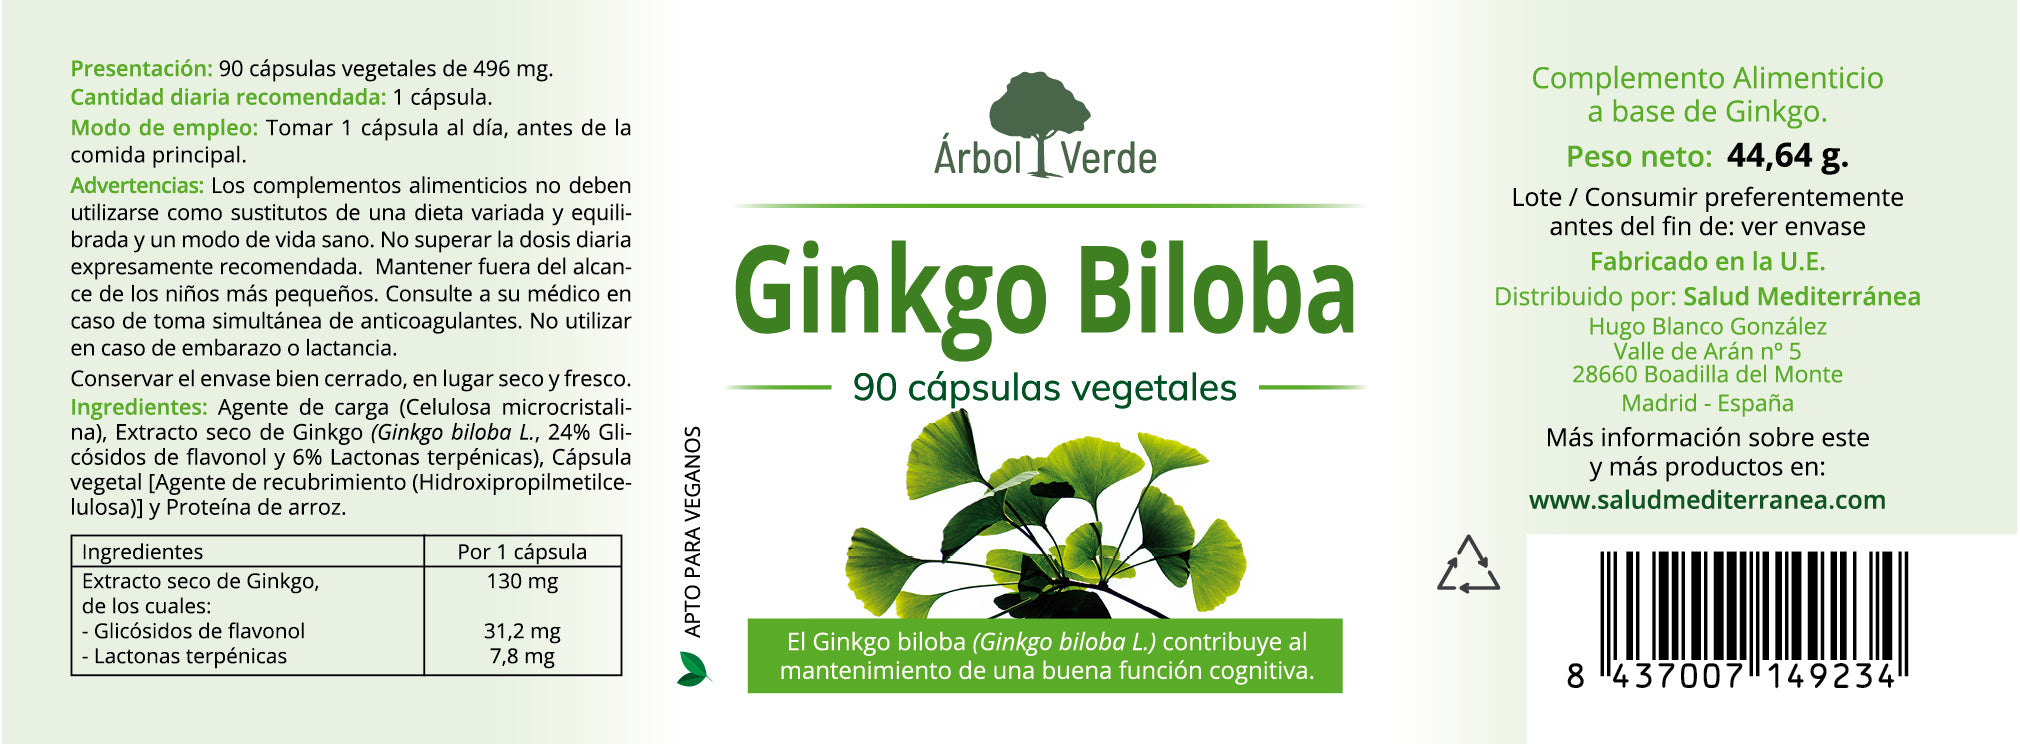 Etiqueta Ginkgo Biloba Estandarizado - 90 Cápsulas. Árbol Verde. Herbolario Salud Mediterranea